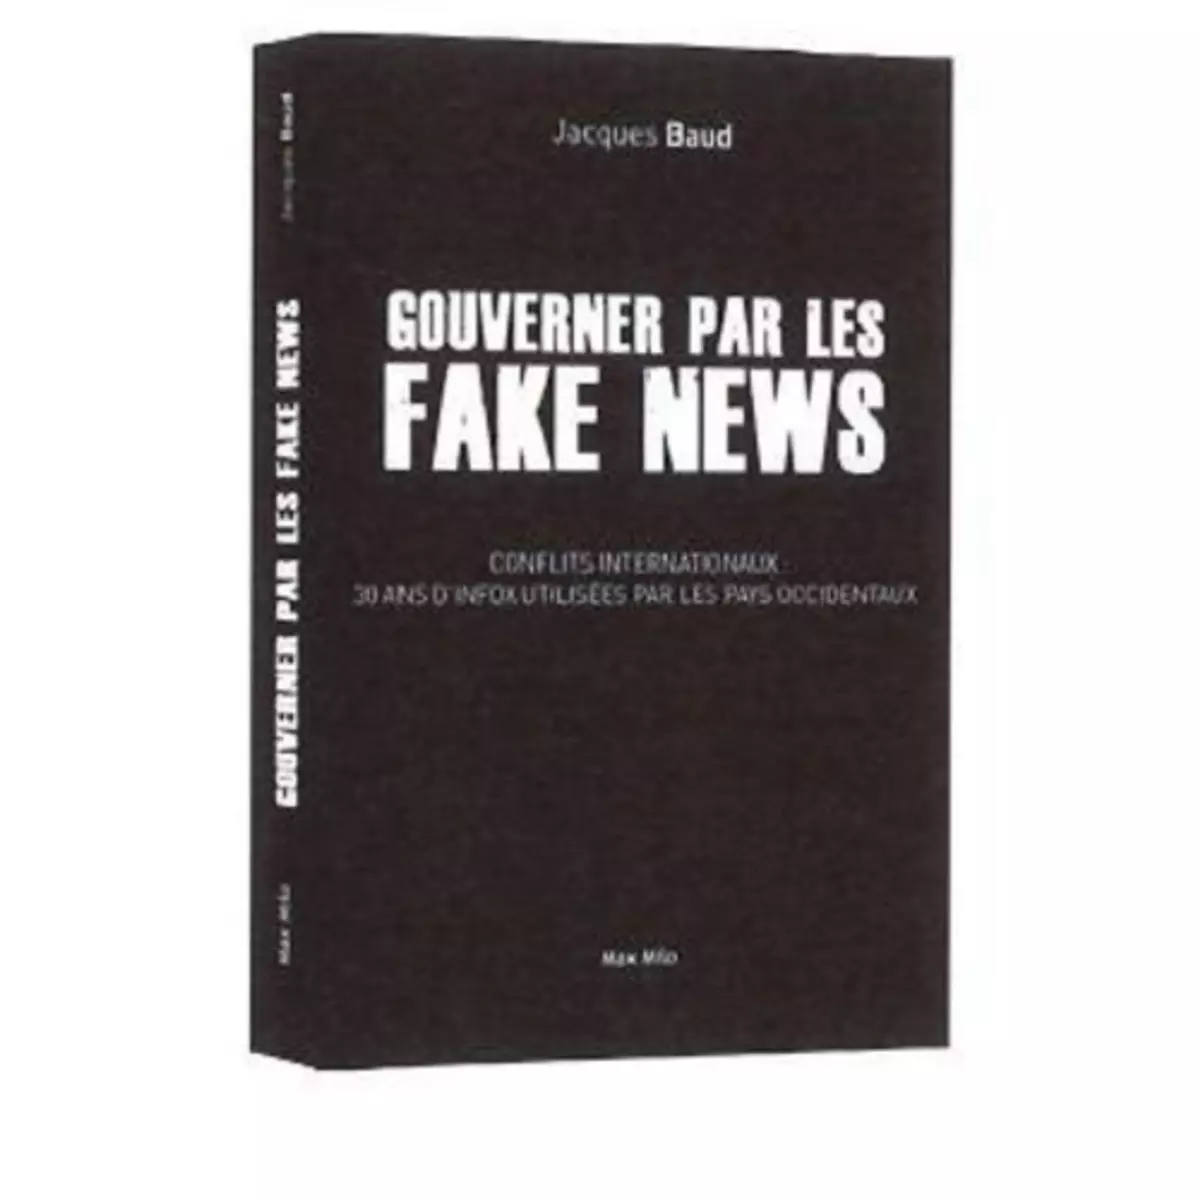  GOUVERNER PAR LES FAKES NEWS, Baud Jacques